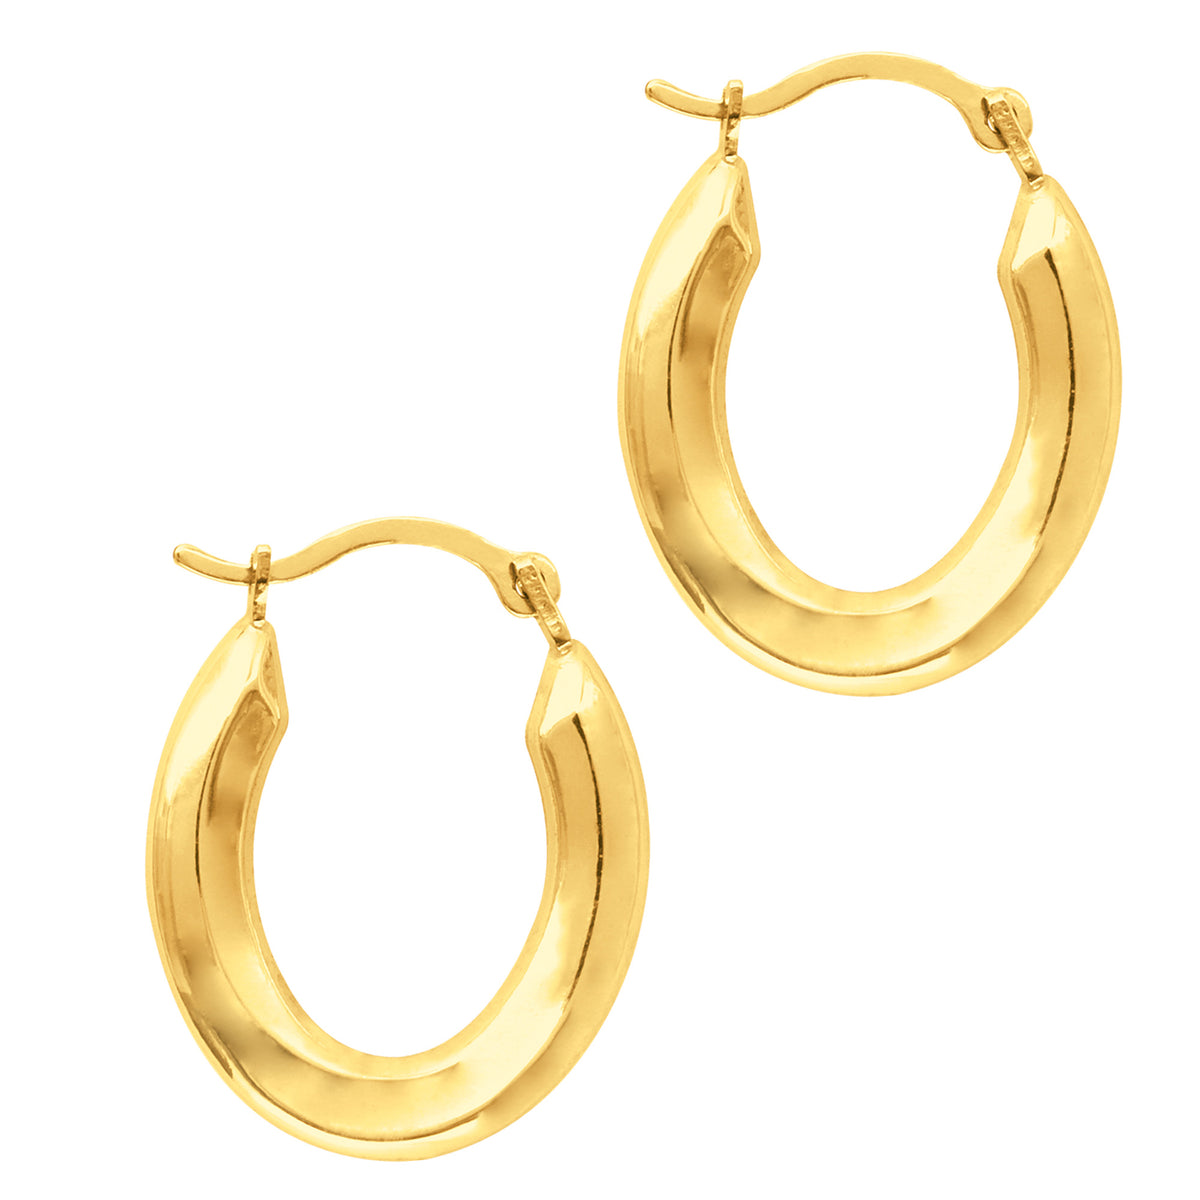 10k Yellow Gold Shiny Oval Shape Hoop Earrings, Diameter 20mm